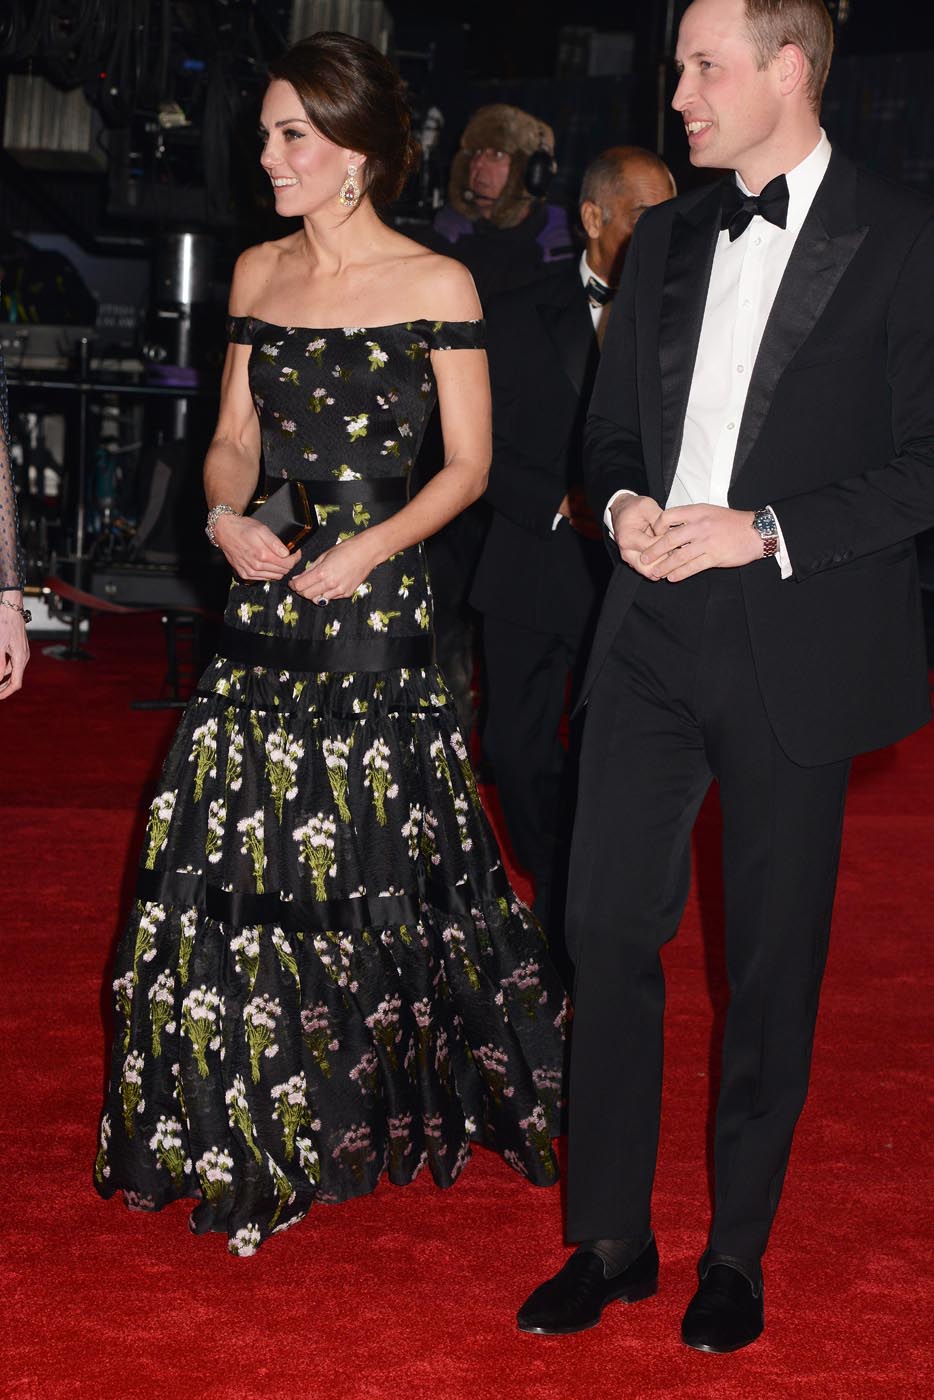 Kate Middleton at the 2017 BAFTAs